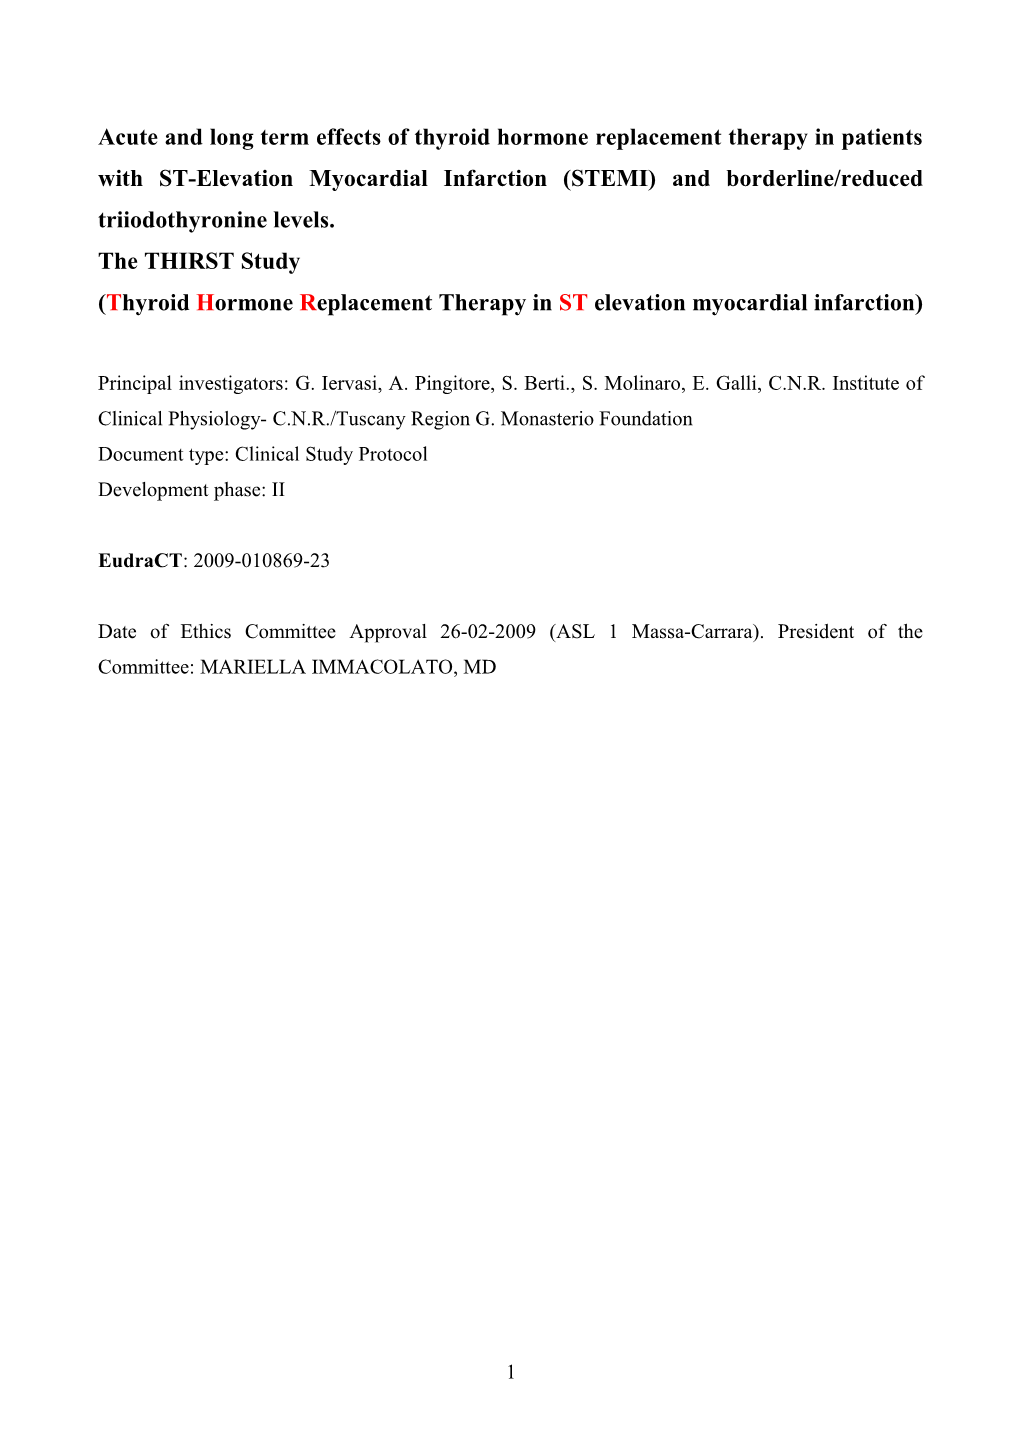 Terapia Sostitutiva Con L-T3 in Pazienti Con STEMI E Sindrome Da Bassa T3